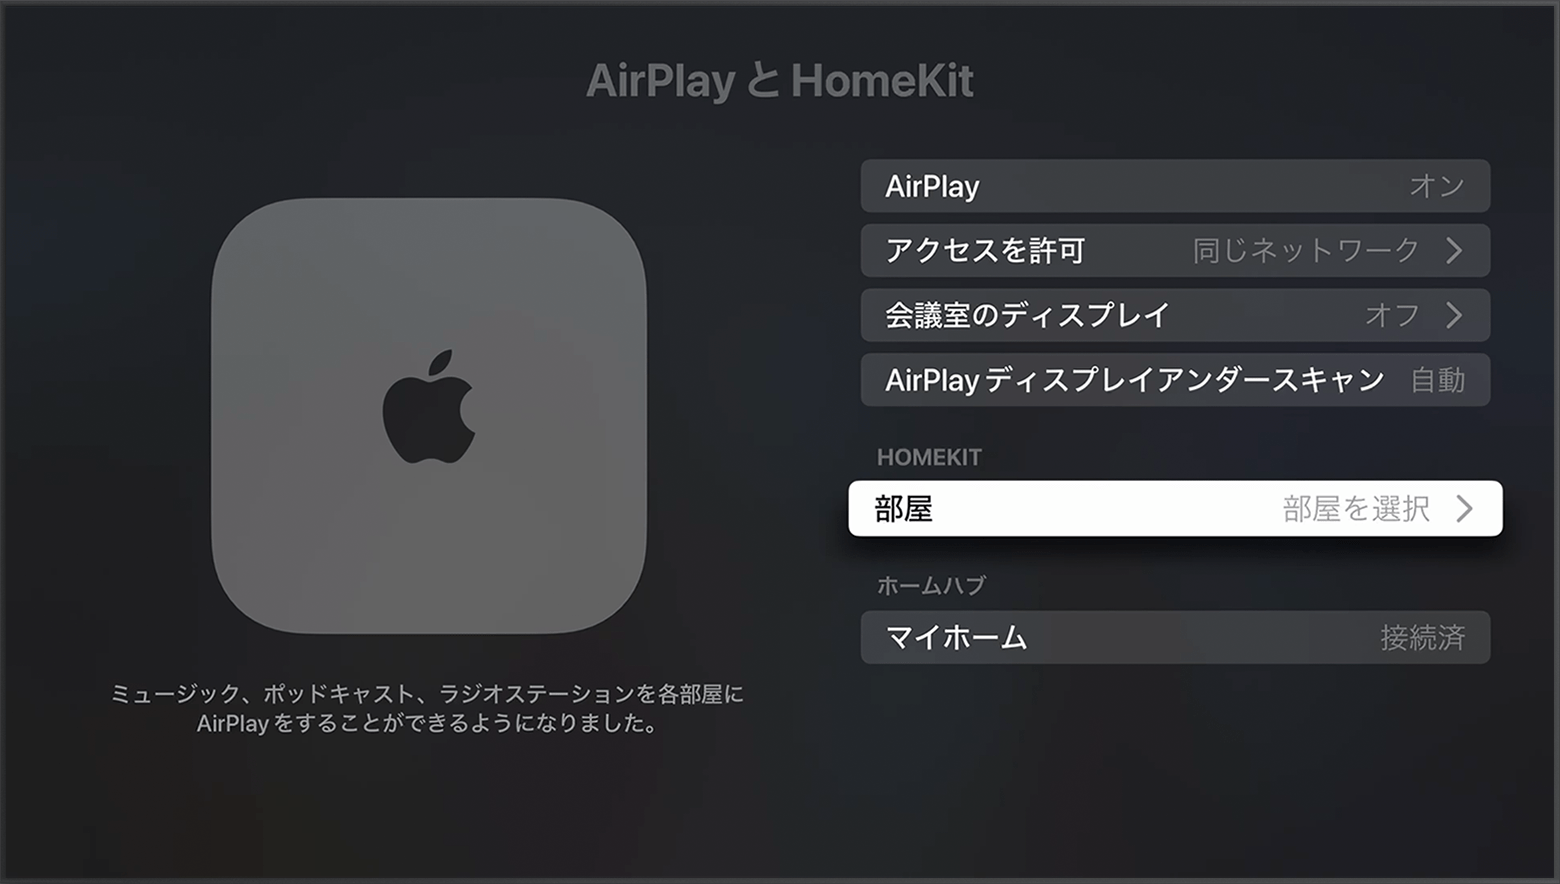 「部屋」が、Apple TV の設定の「AirPlay と HomeKit」画面で、HomeKit の下に表示されています